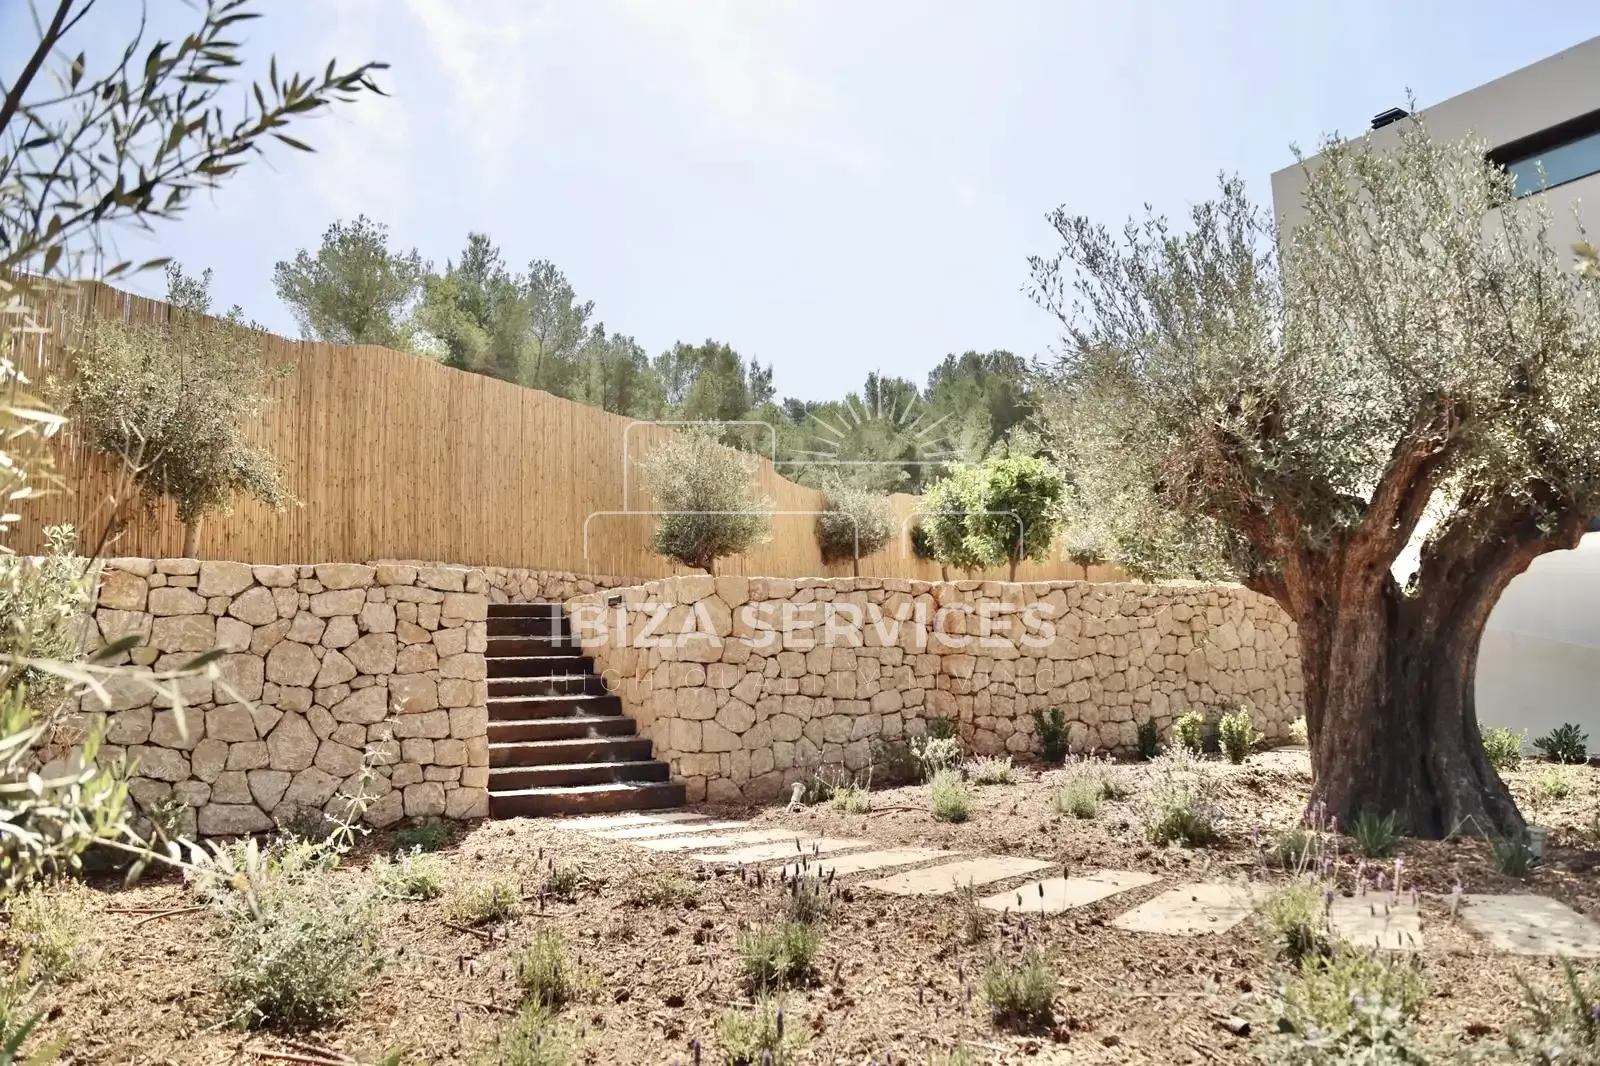 Villa de Lujo Prestigiosa en Roca Llisa directamente en el Campo de Golf de Ibiza en Venta